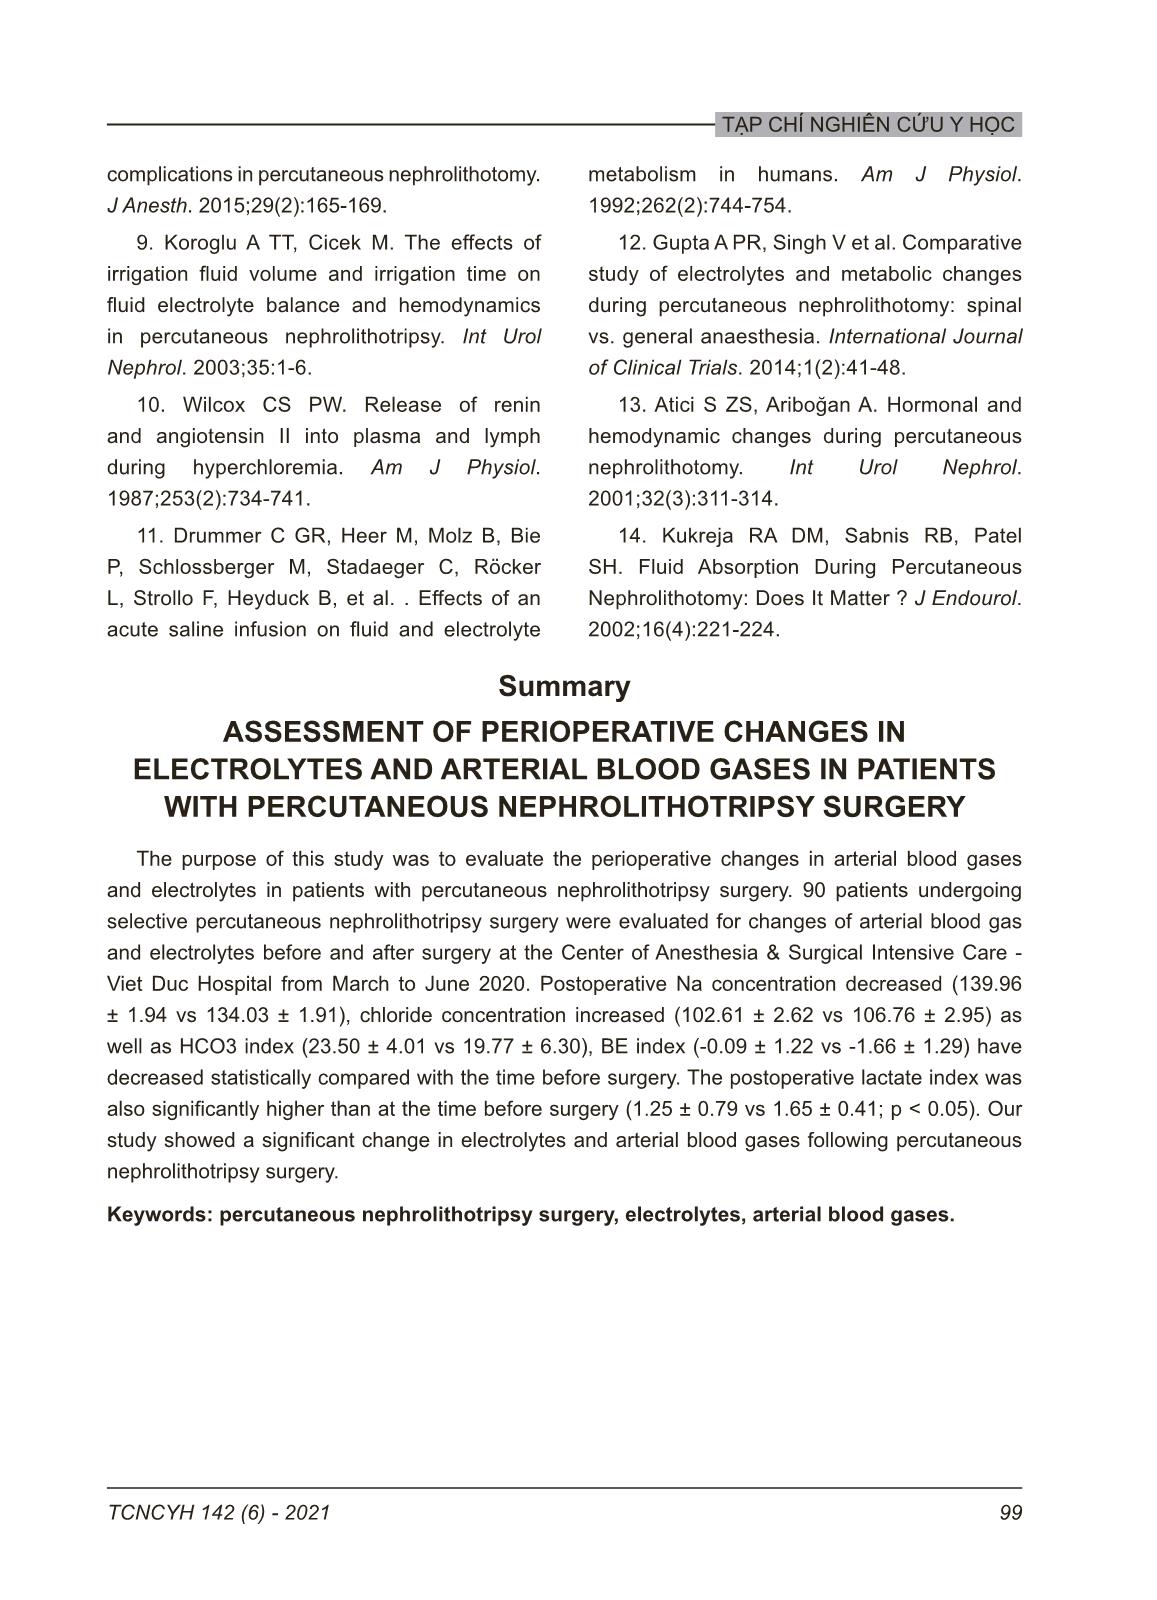 Đánh giá thay đổi khí máu động mạch và điện giải đồ trong mổ ở bệnh nhân phẫu thuật tán sỏi thận qua da trang 7